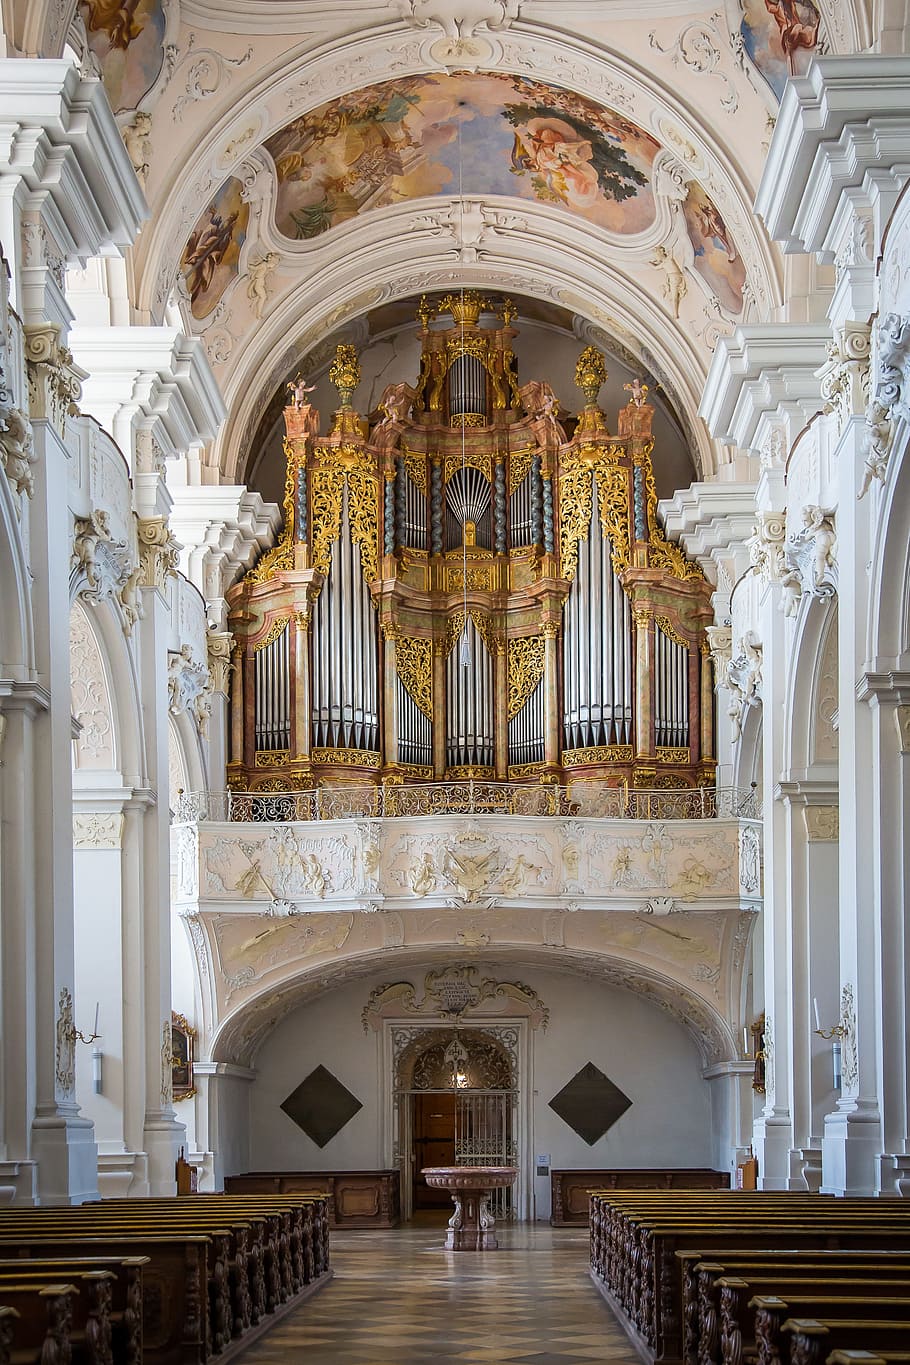 Niederalteich, Monasterio, benedictino, abadía, monasterio benedictino, iglesia del monasterio, órgano, baviera, instrumento musical, arco